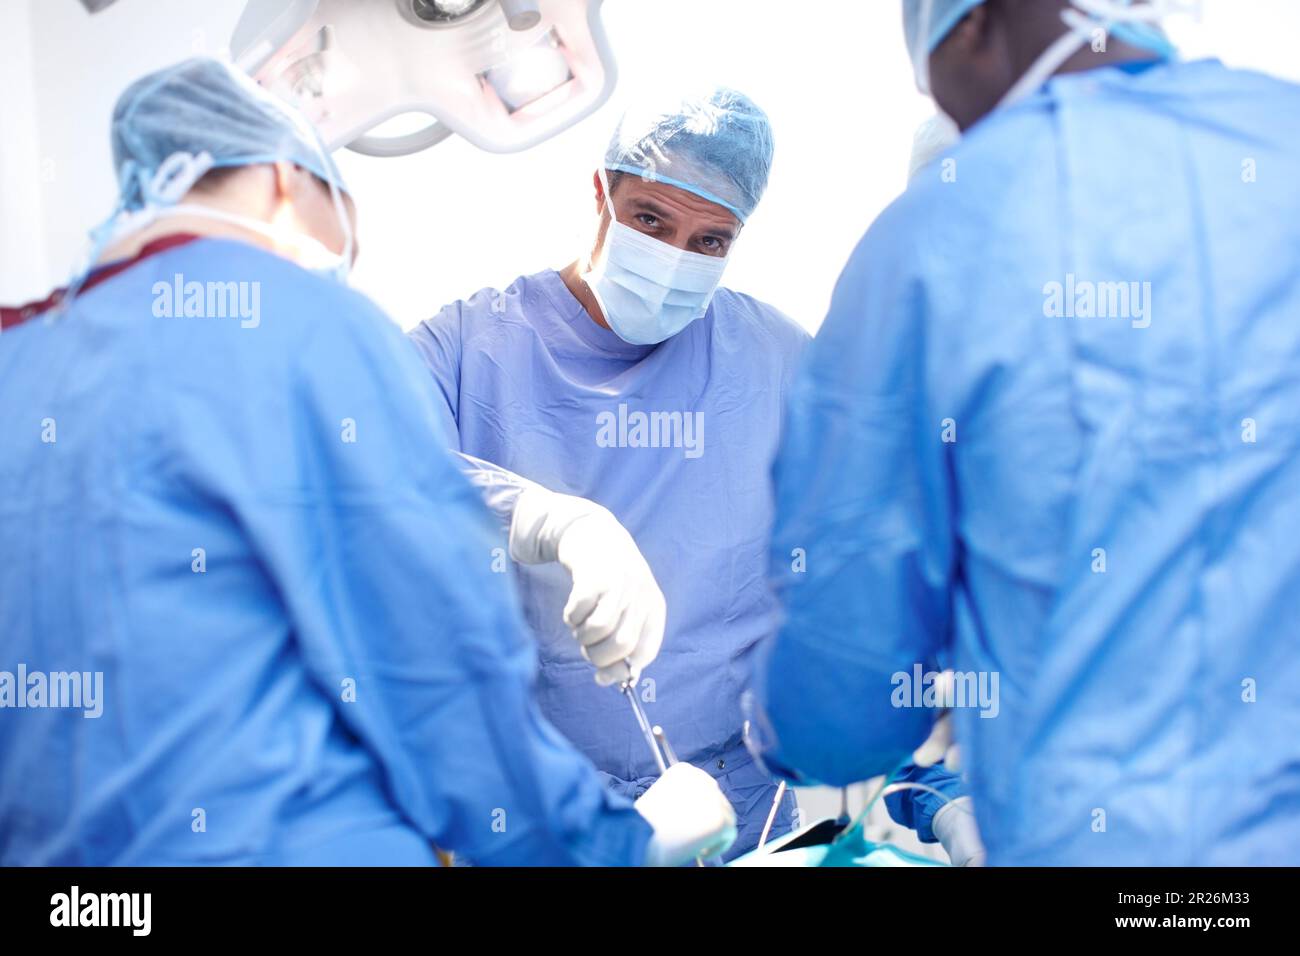 Passando sotto il coltello. Ritratto di un chirurgo maschio che esegue un intervento chirurgico su un paziente in una sala operatoria. Foto Stock